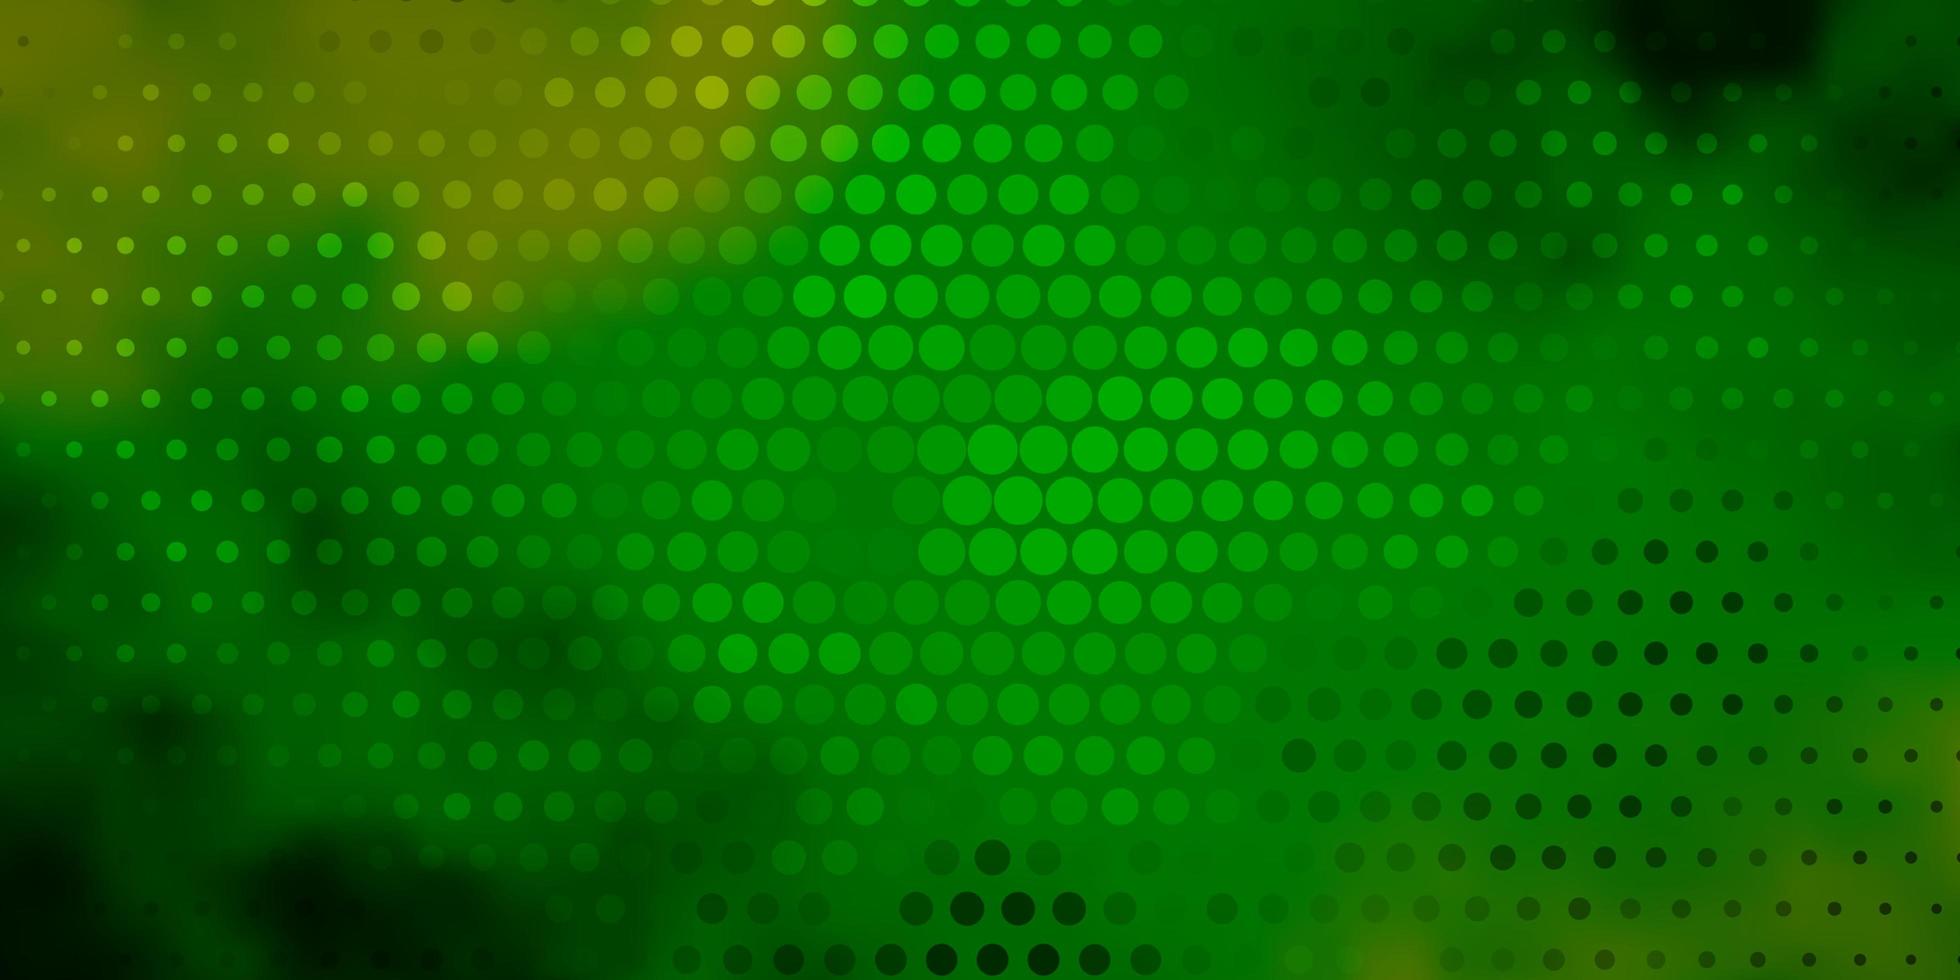 donkerblauw, groen vectorpatroon met cirkels. moderne abstracte illustratie met kleurrijke cirkelvormen. patroon voor boekjes, folders. vector